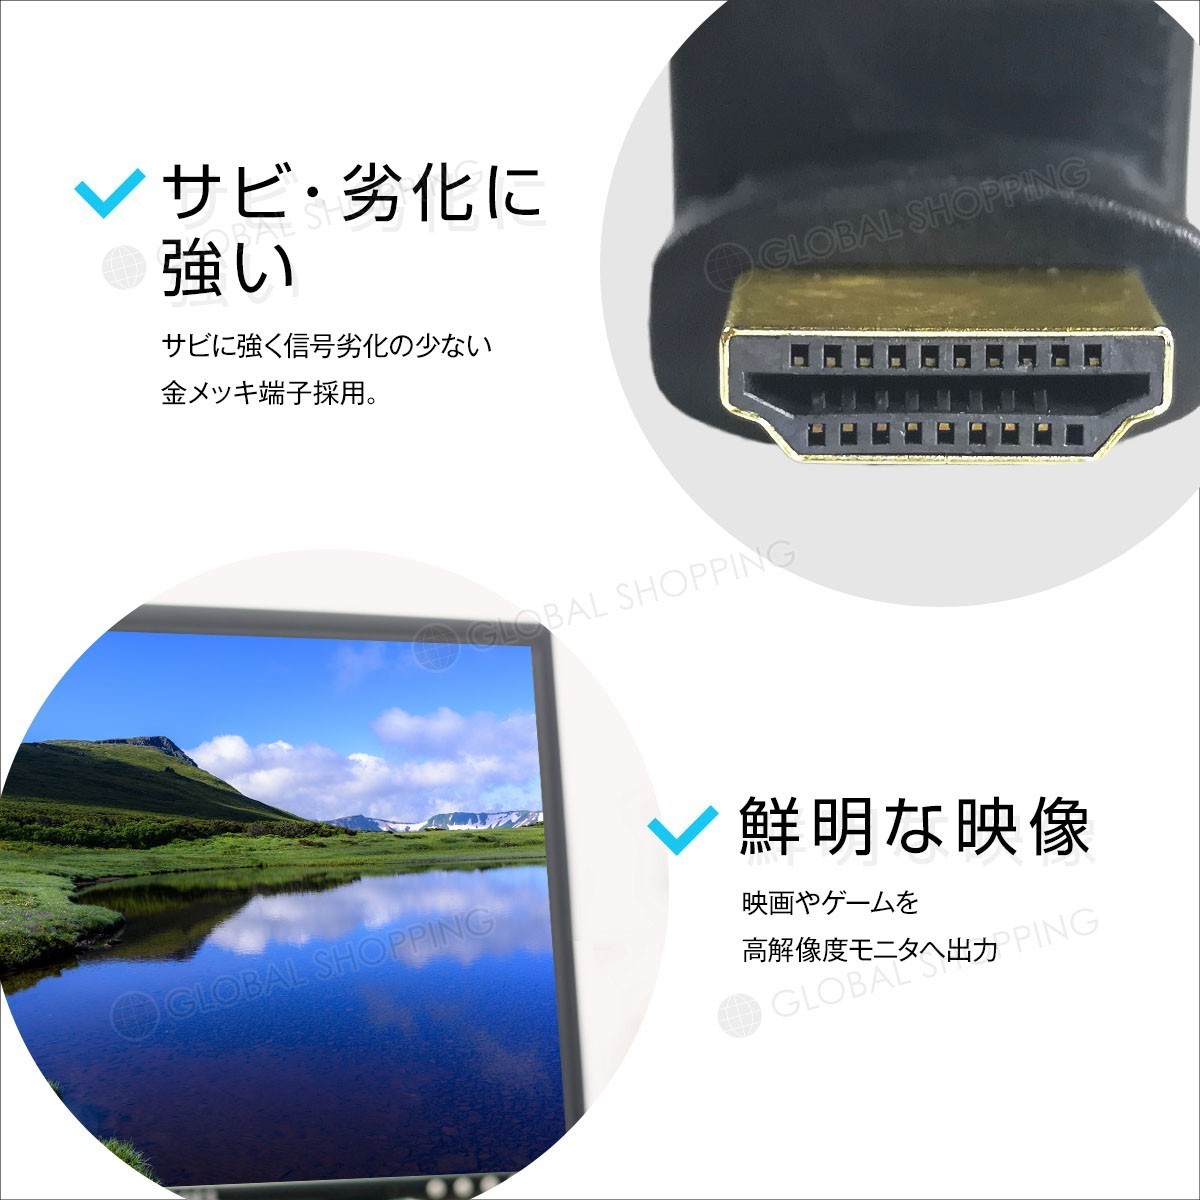 HDMI延長用アダプター 270度 上向き HDMI 変換アダプタ 角度調整 L型アダプタ L字コネクタ 変換コネクタ 向き テレビ PC モニター コネクタ_画像3